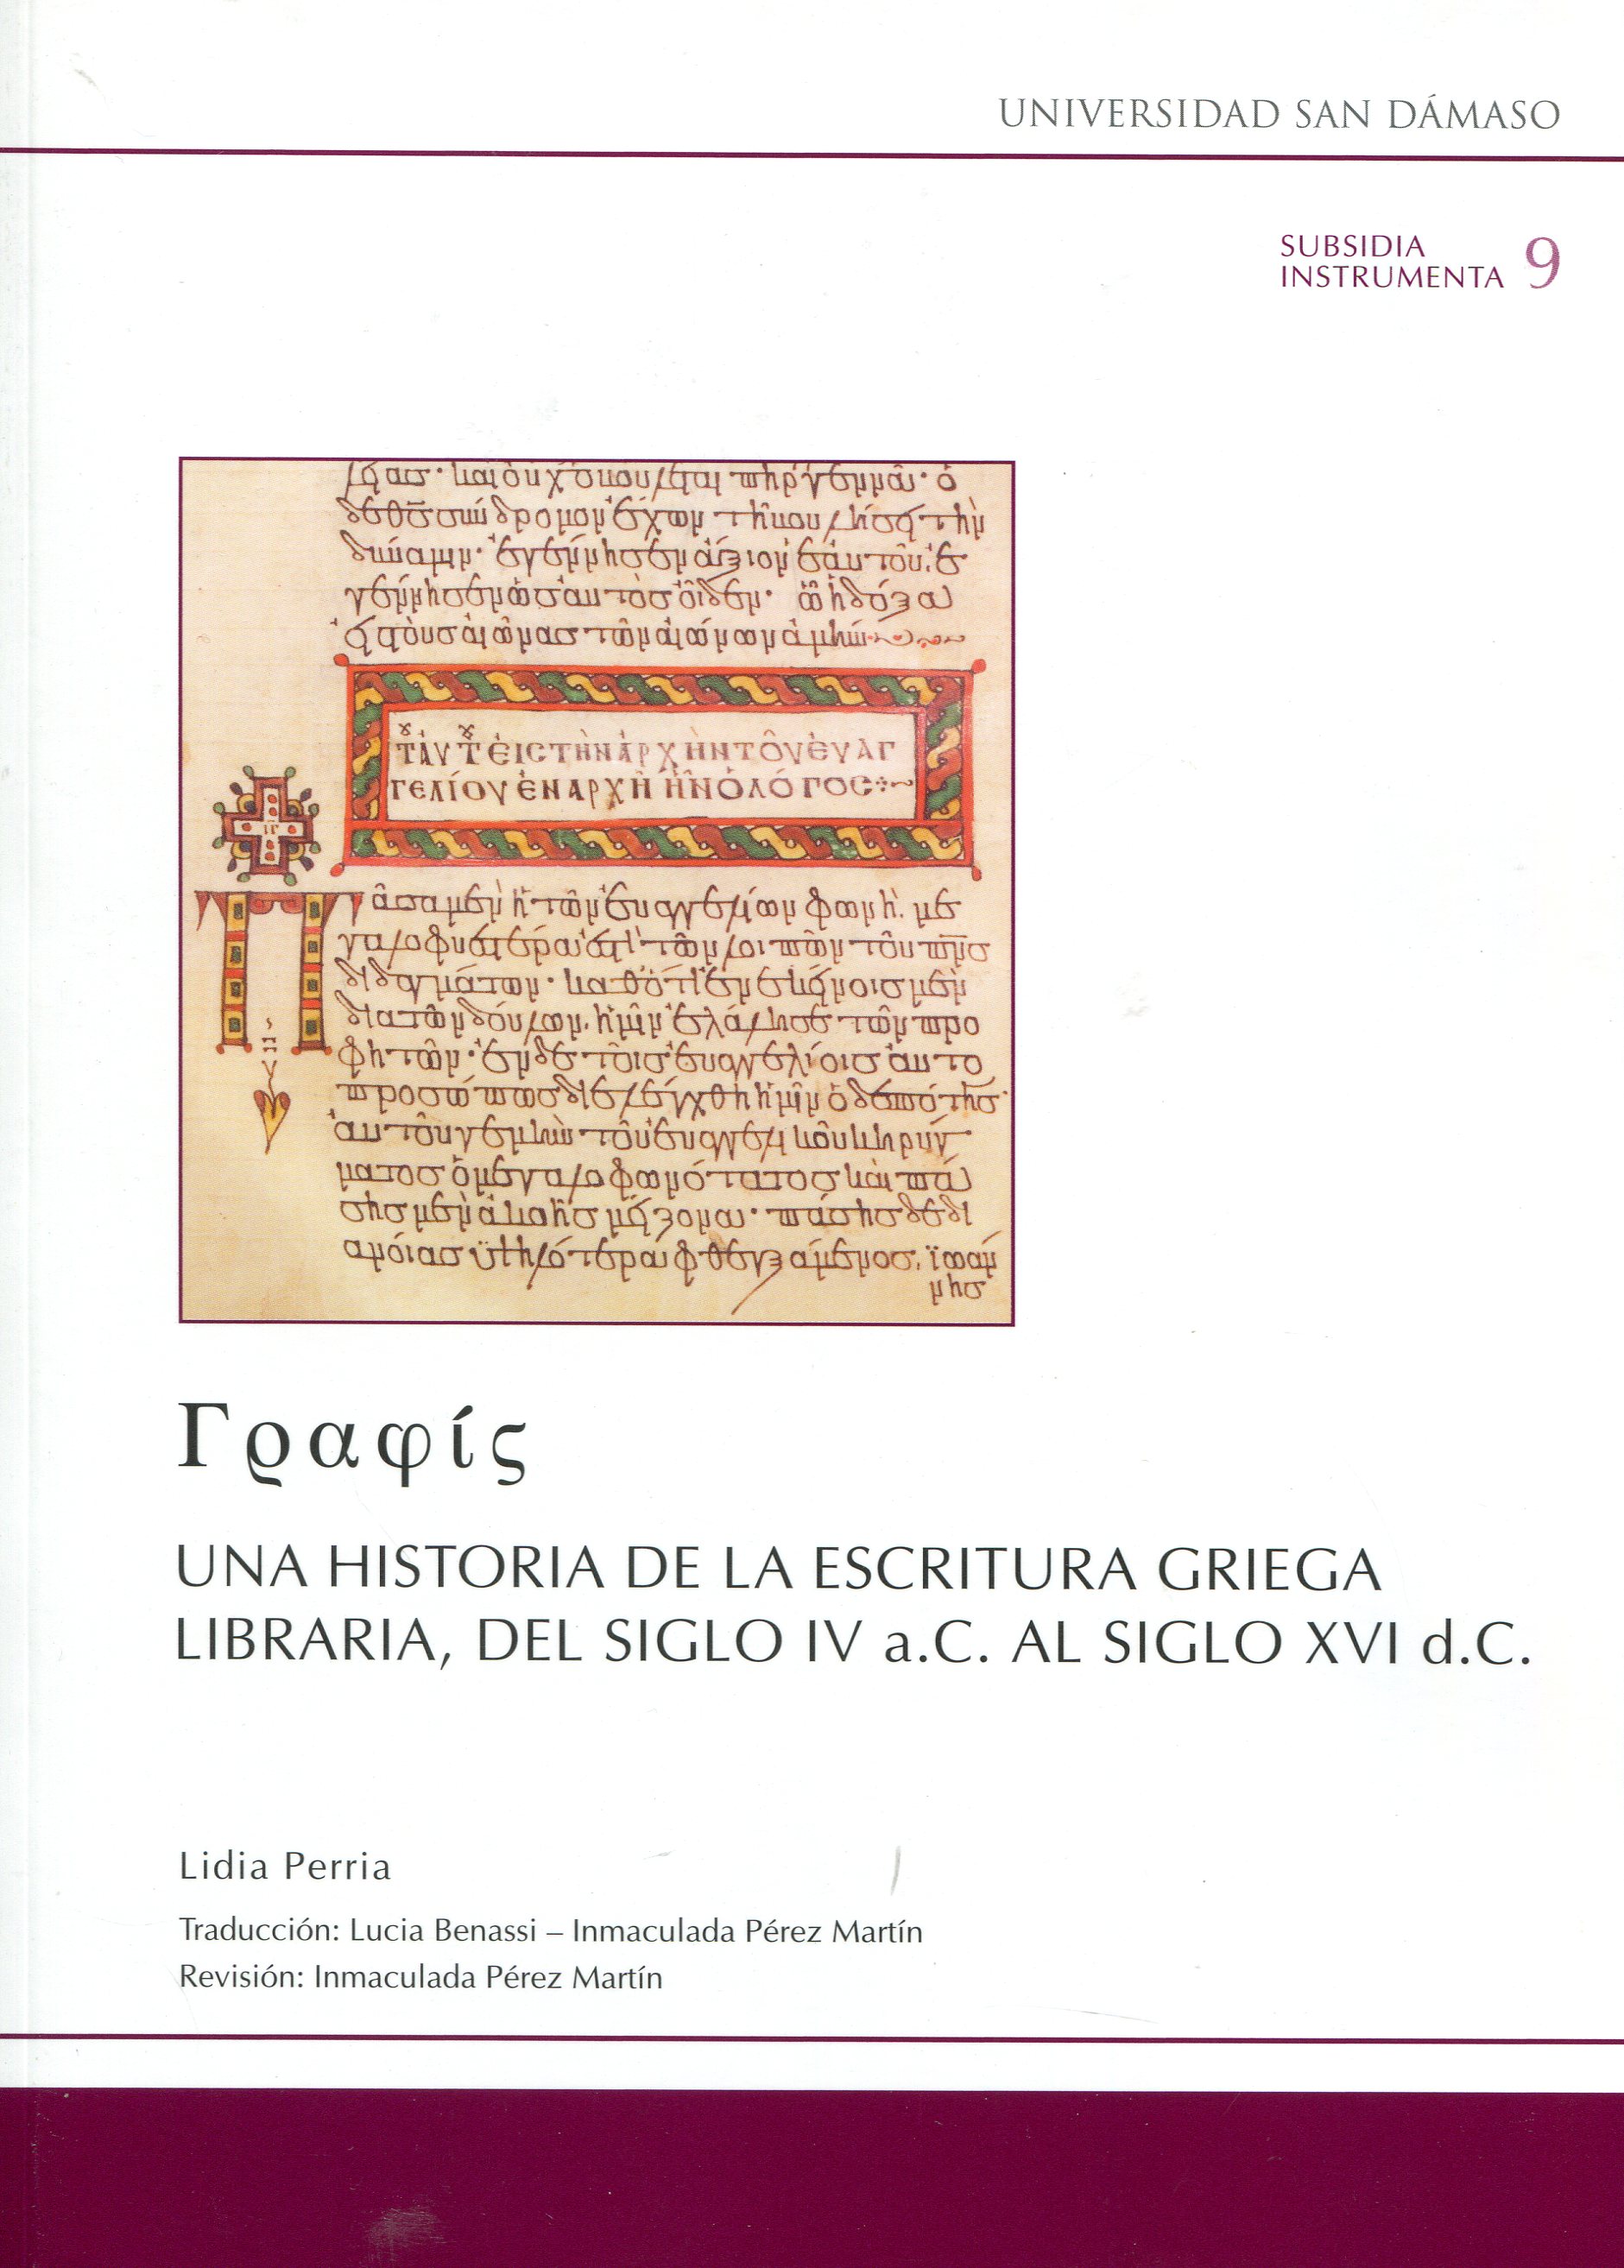 Una historia de la escritura griega libraria, del siglo IV a.C. al siglo XVI d.C.. 9788416639625